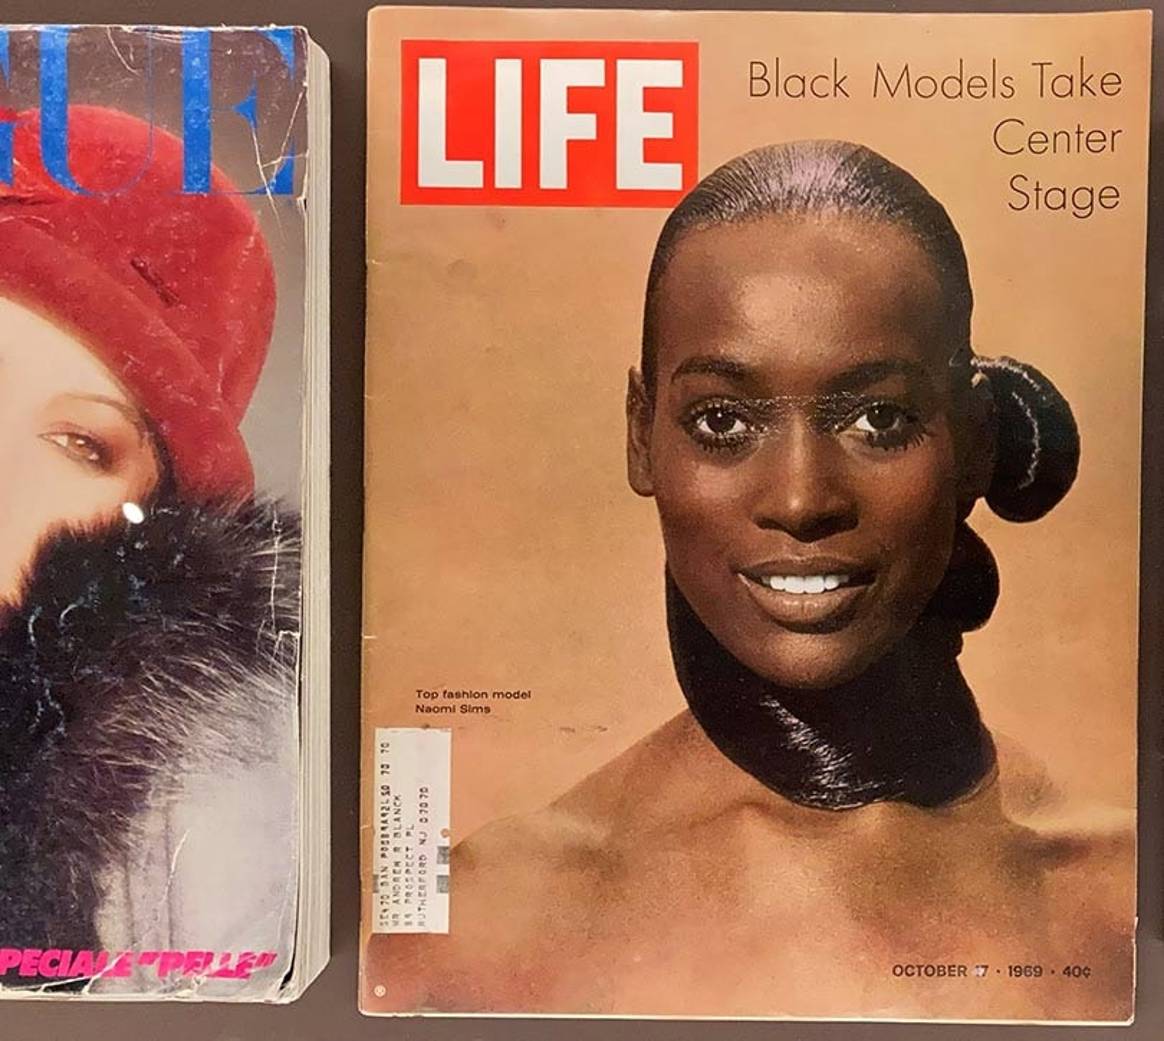 Boven: Cover van Life
Magazine uit 1969 met model Naomi Sims. Onder: Foto’s van internationale
zwarte modellen.